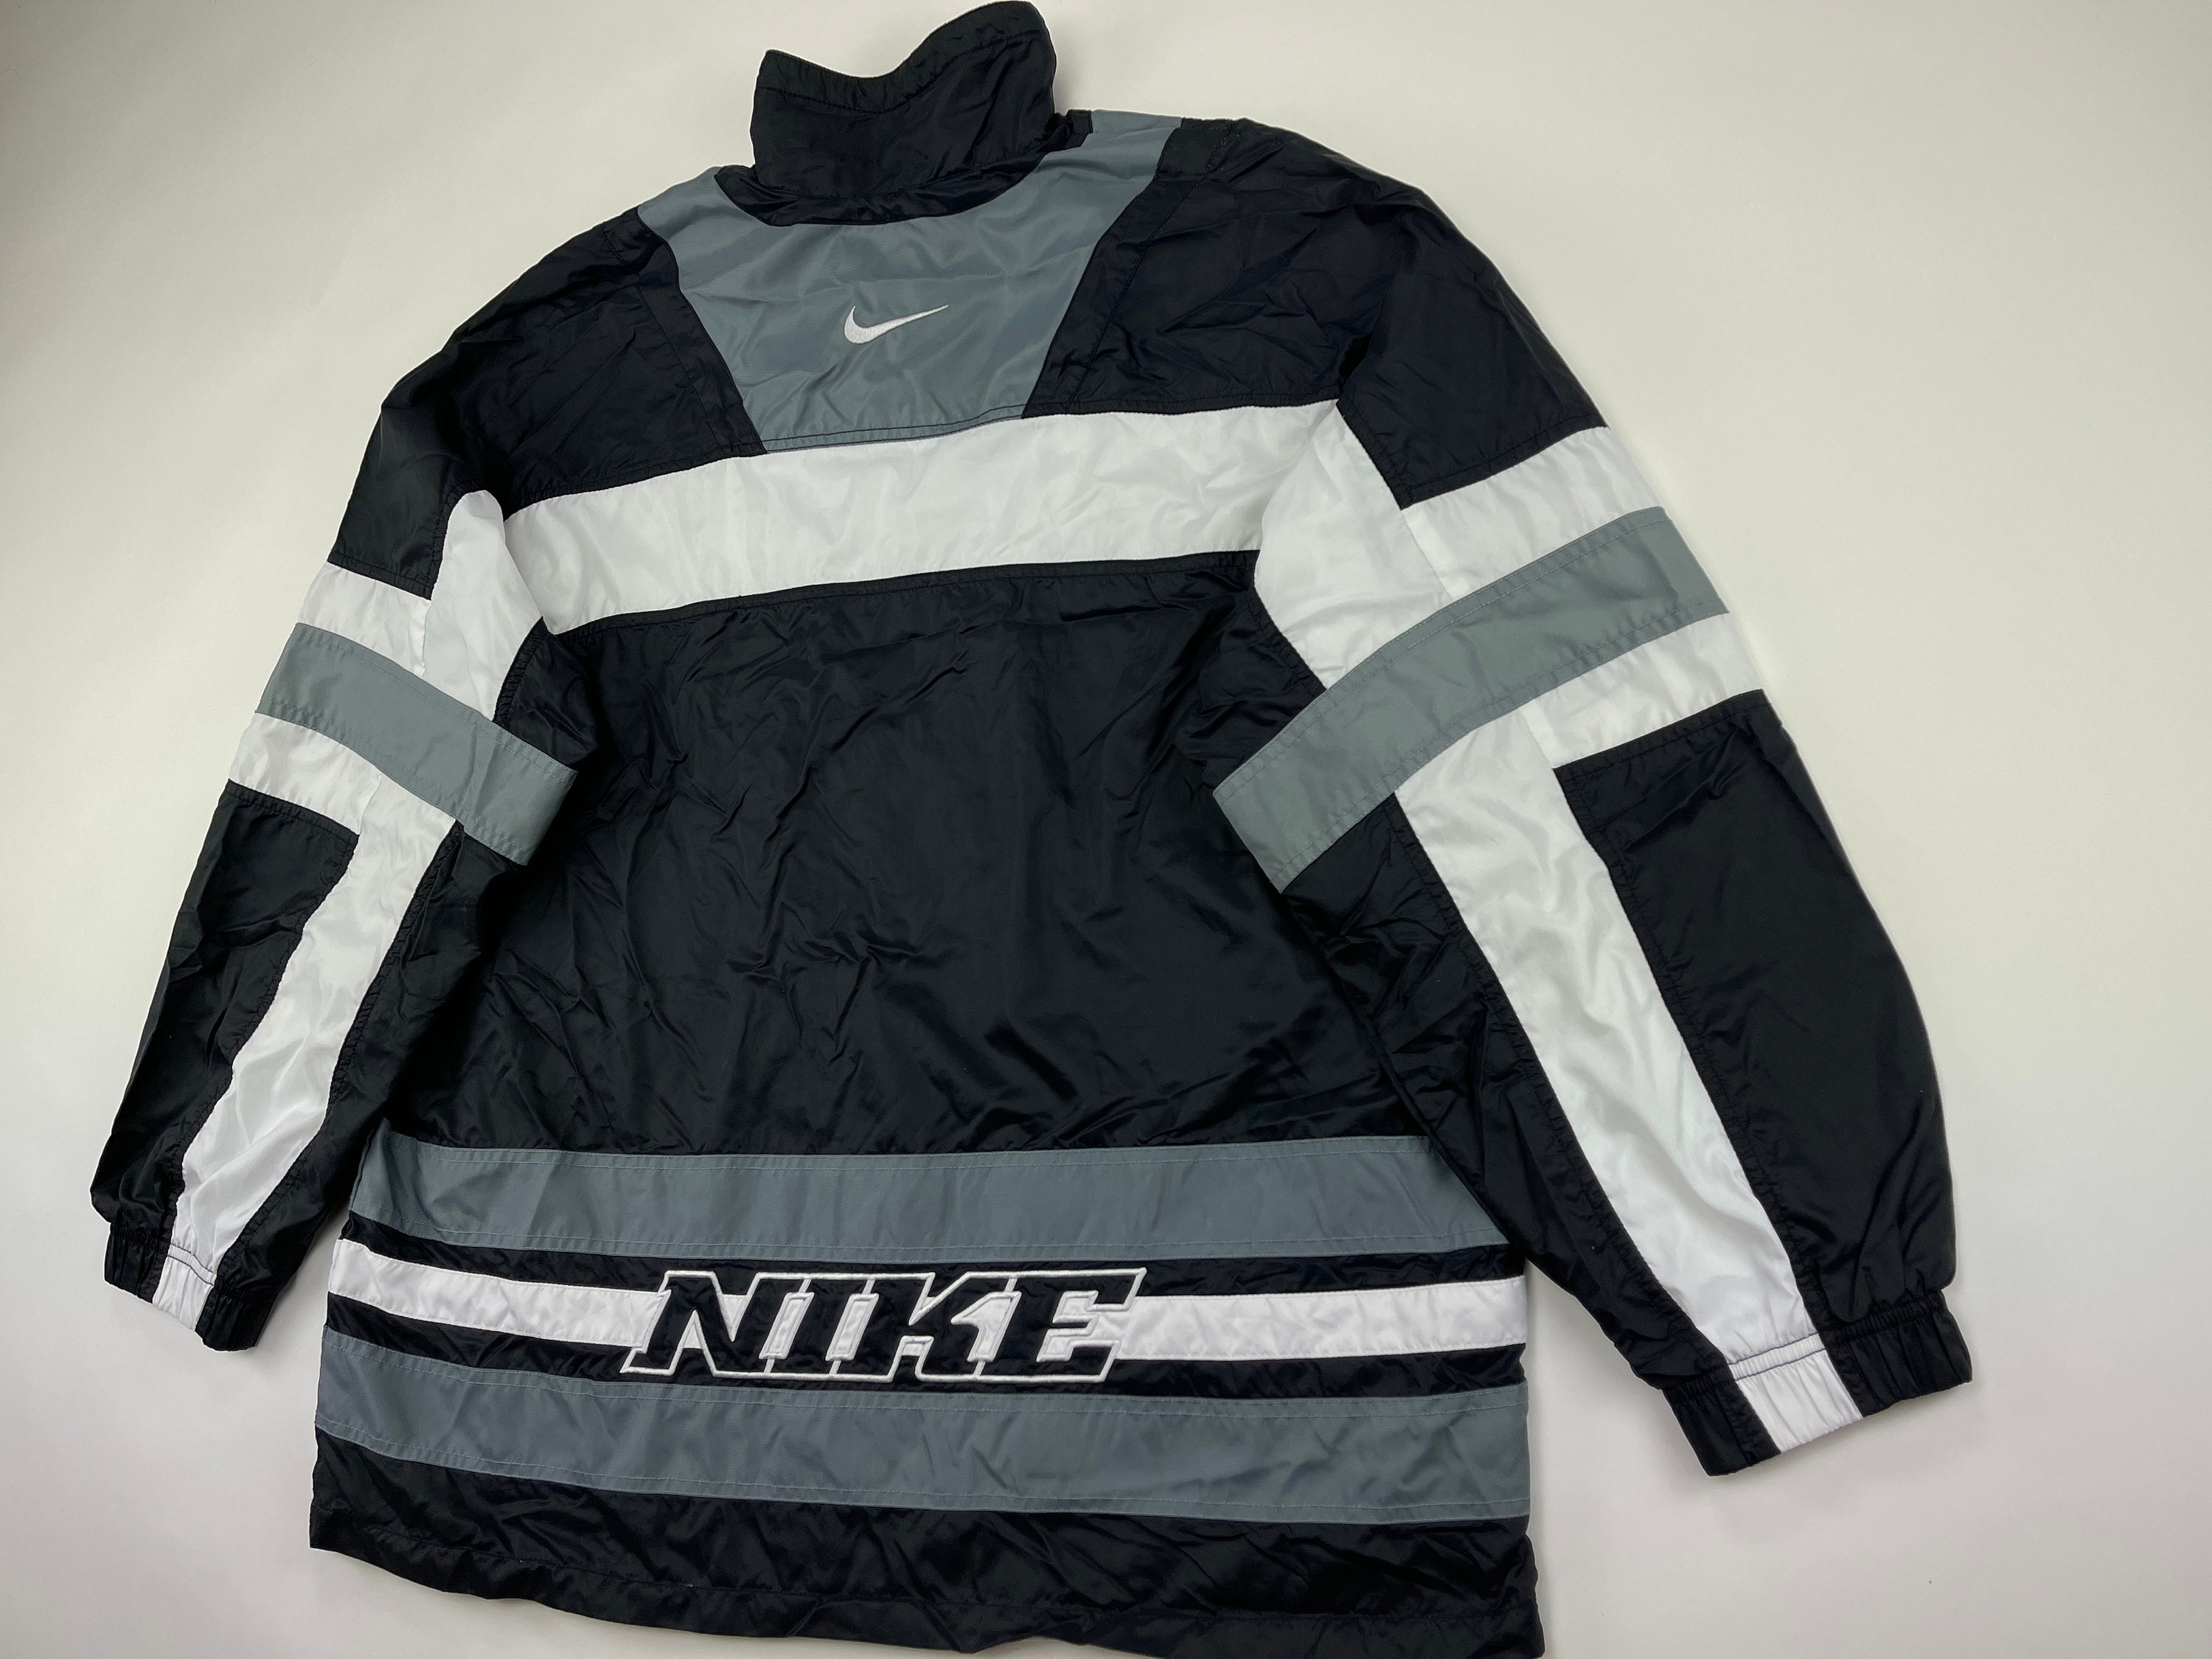 Nike Tracksuit Black Vintage Track Jacket Pants 90s - Etsy New Zealand